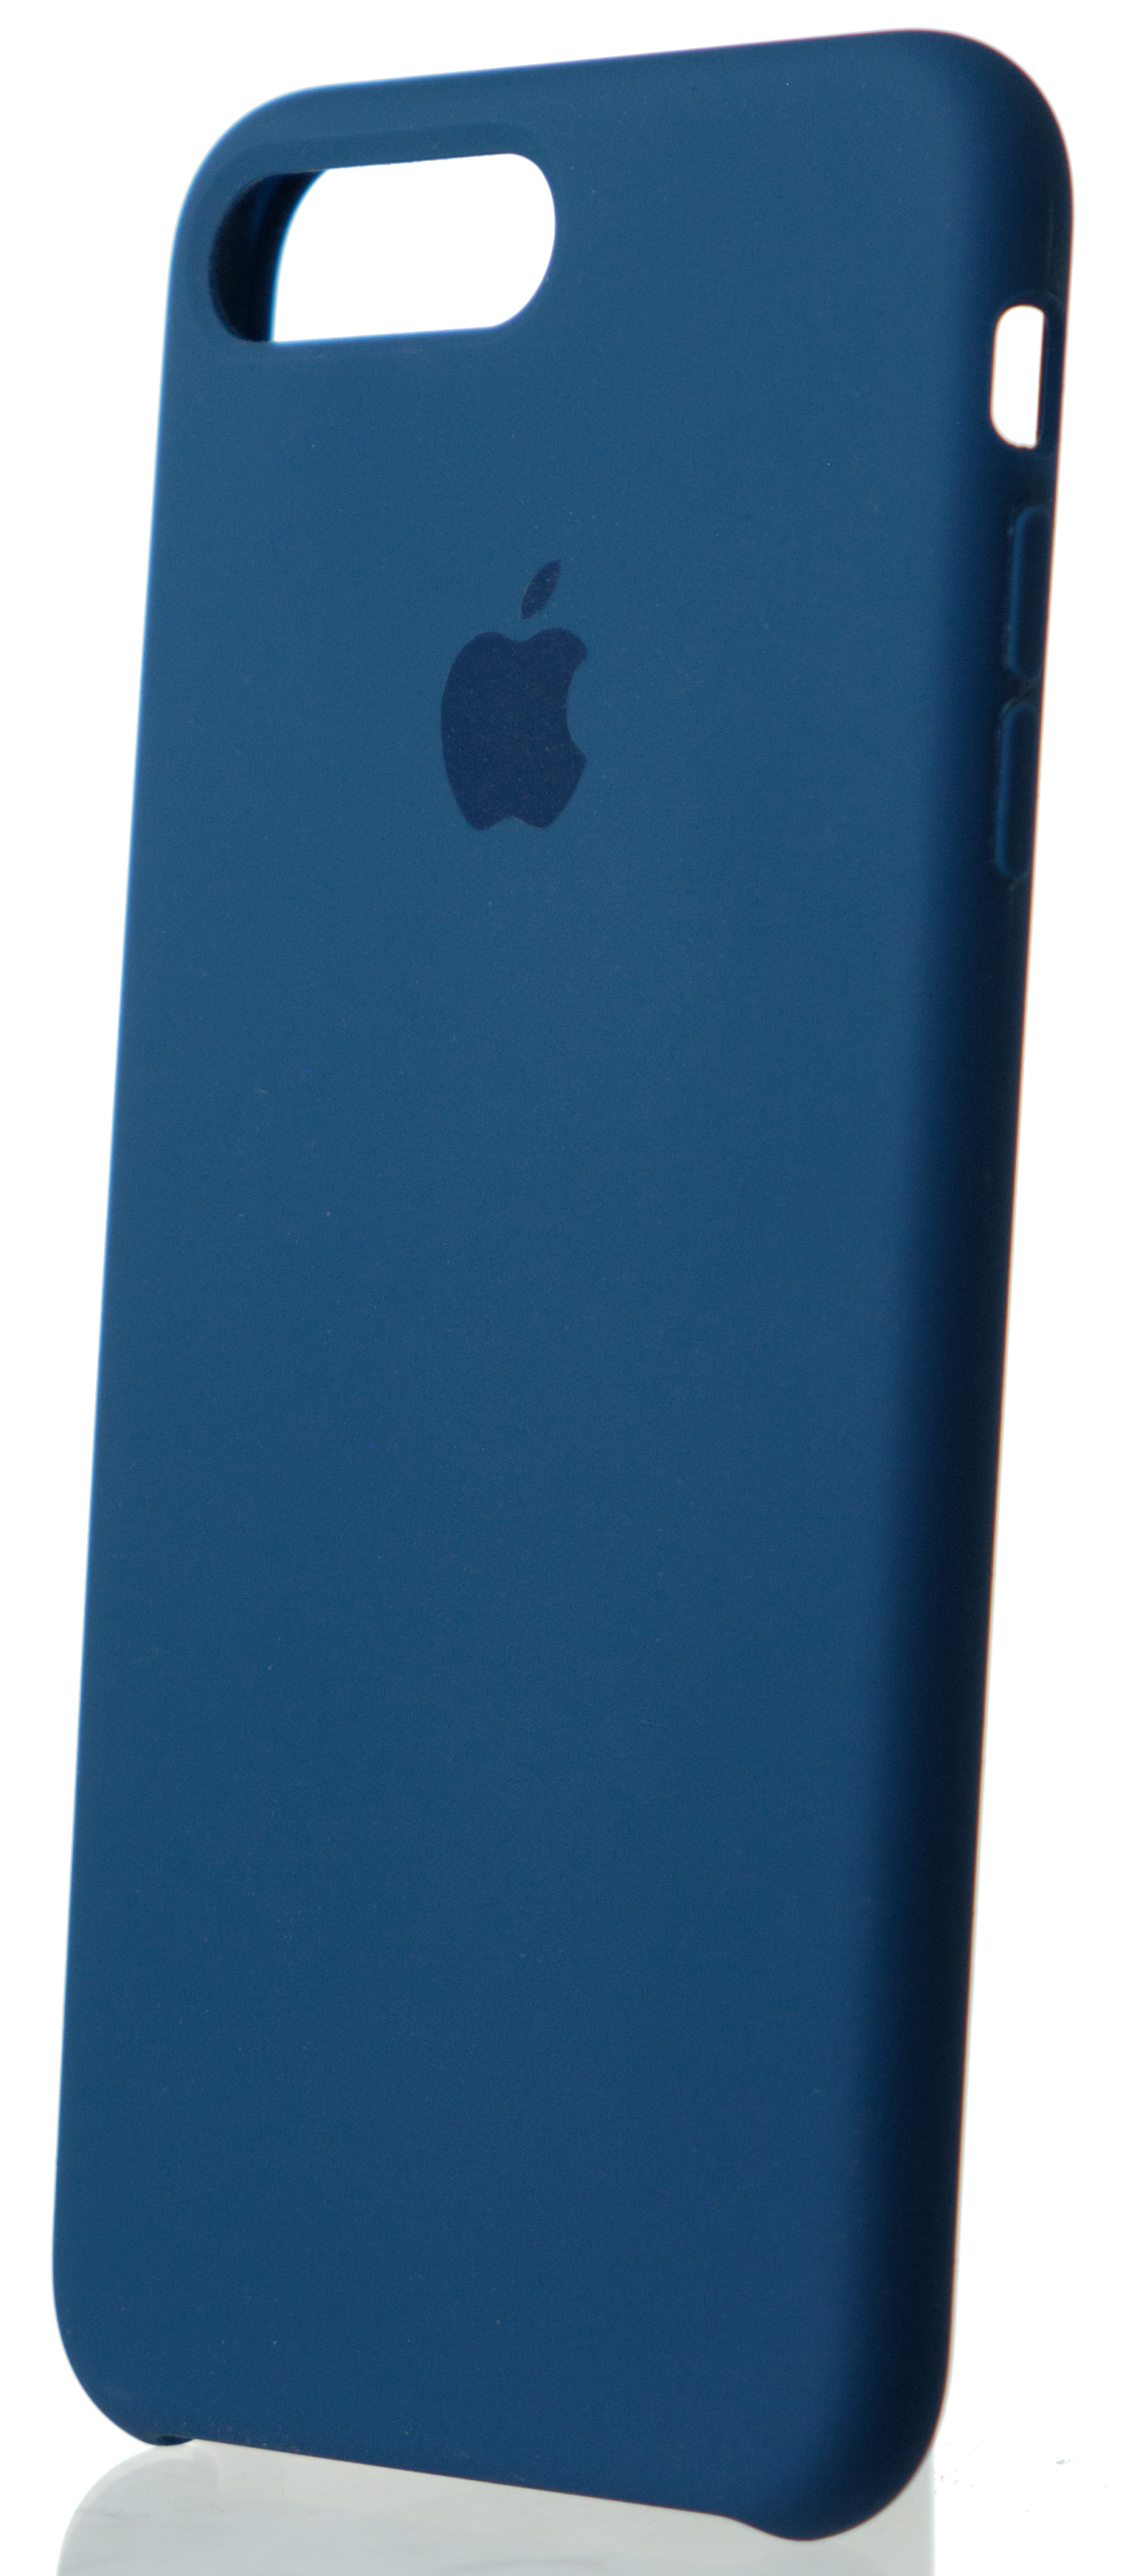 Чехол Silicone Case качество Lux для iPhone 7 Plus/8 Plus синий